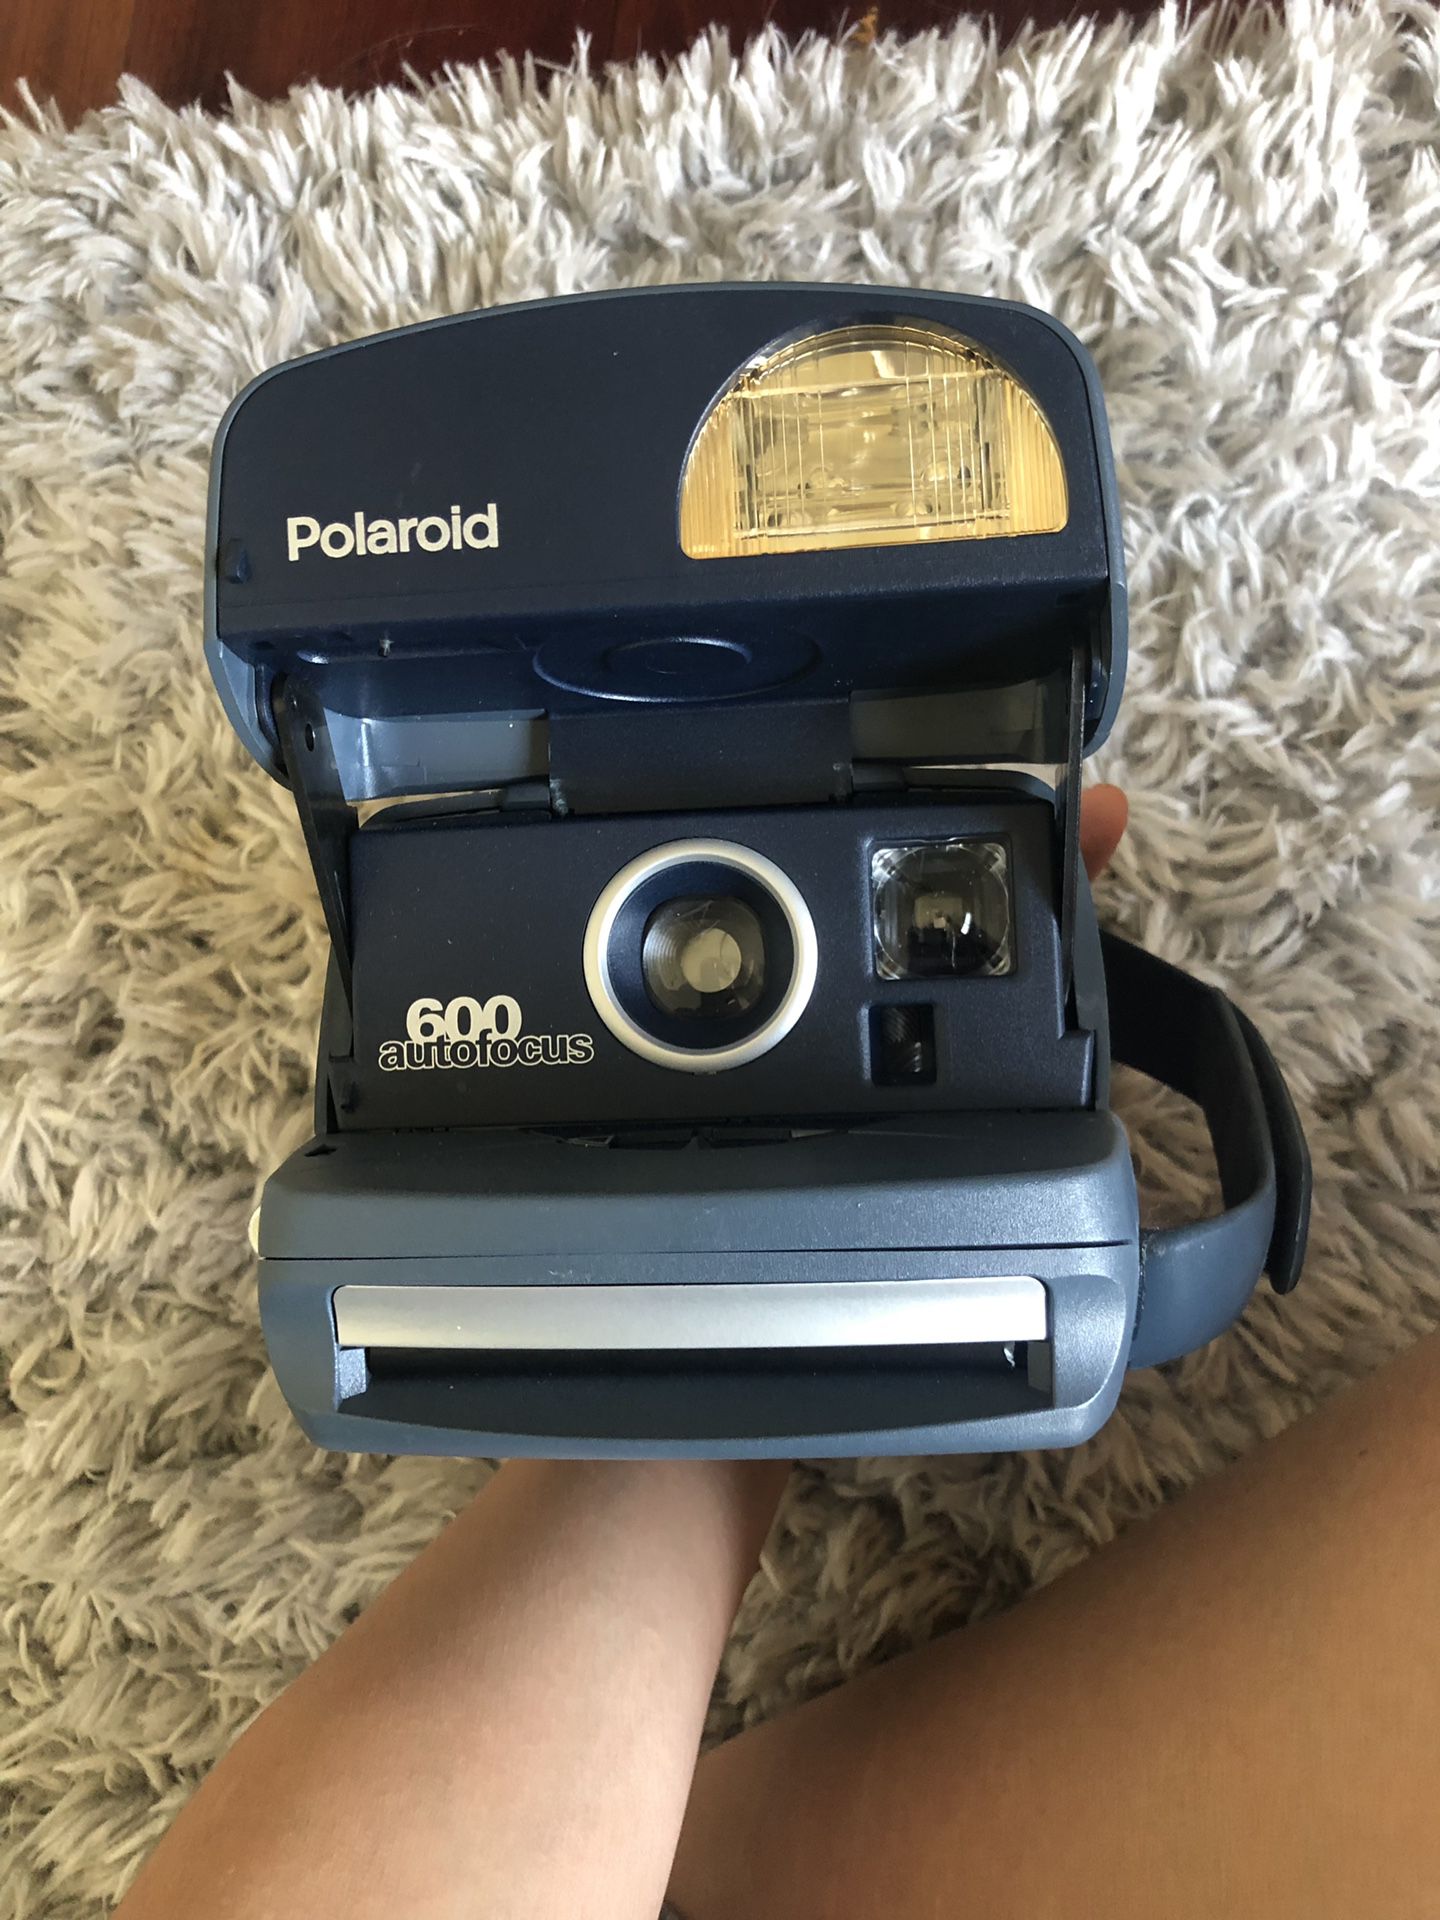 Polaroid camera 600 autofocus